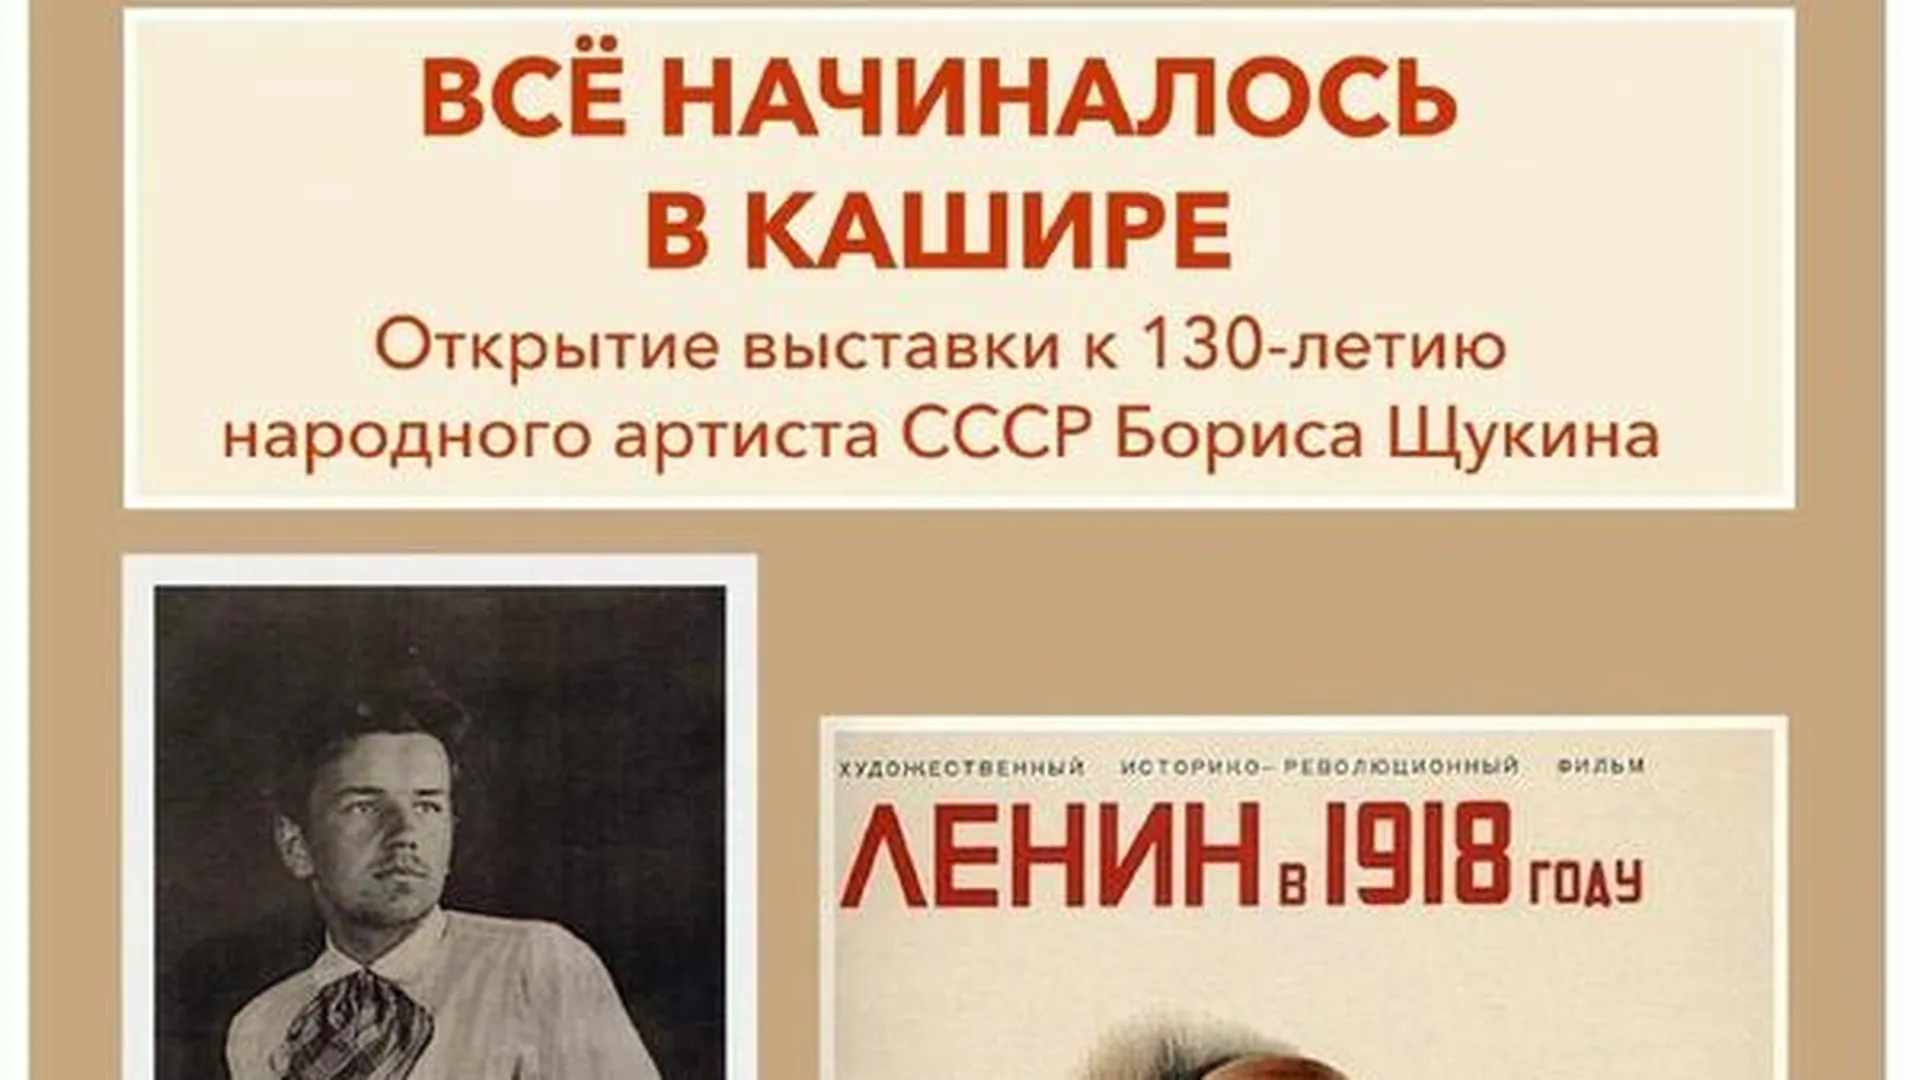 В подмосковной Кашире откроется выставка к 130-летию со дня рождения Бориса Щукина